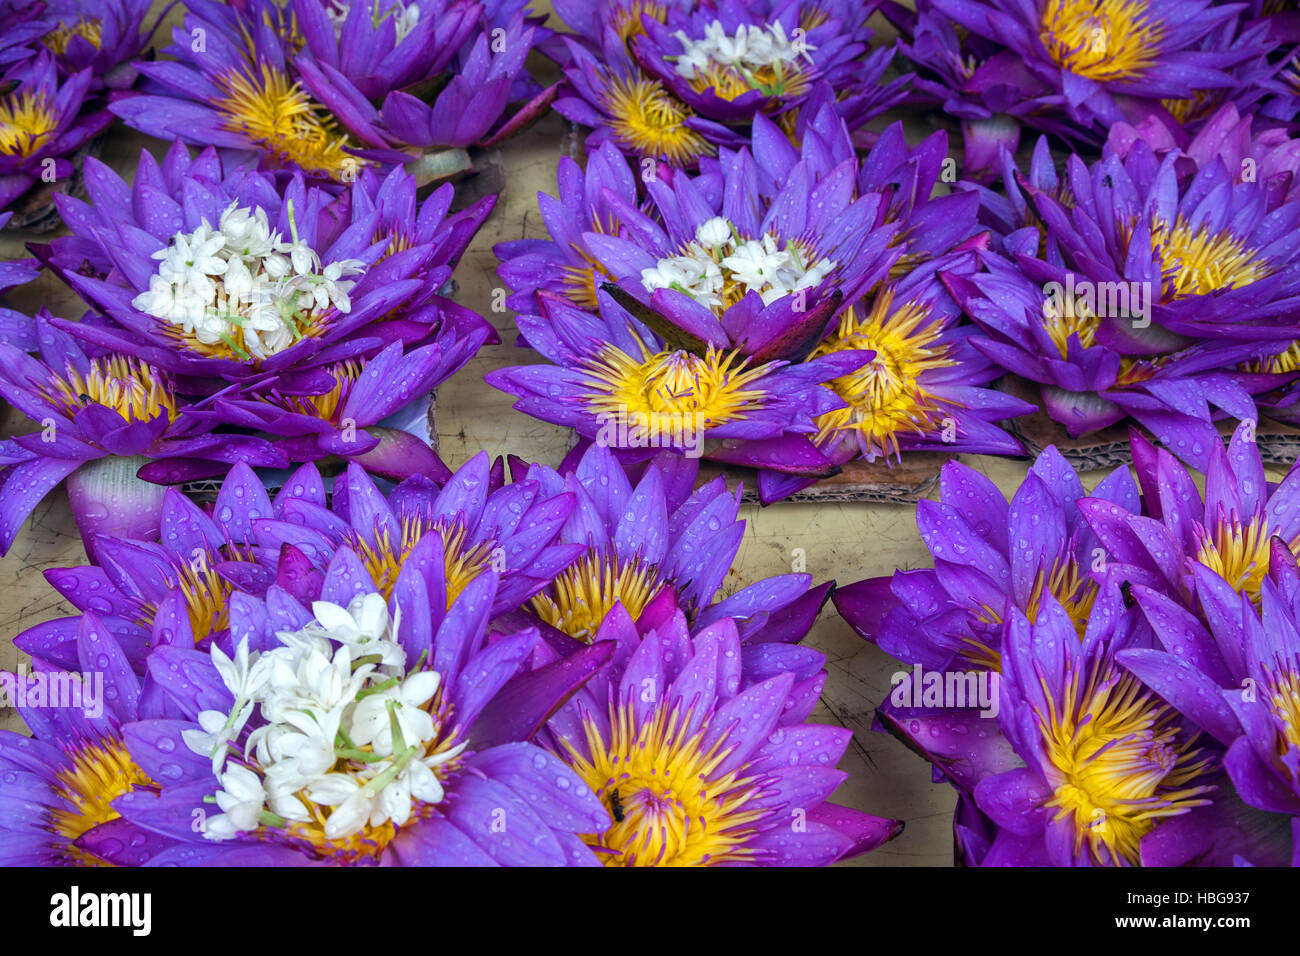 Blauer Lotus Foto & Bild  archiv projekte naturchannel